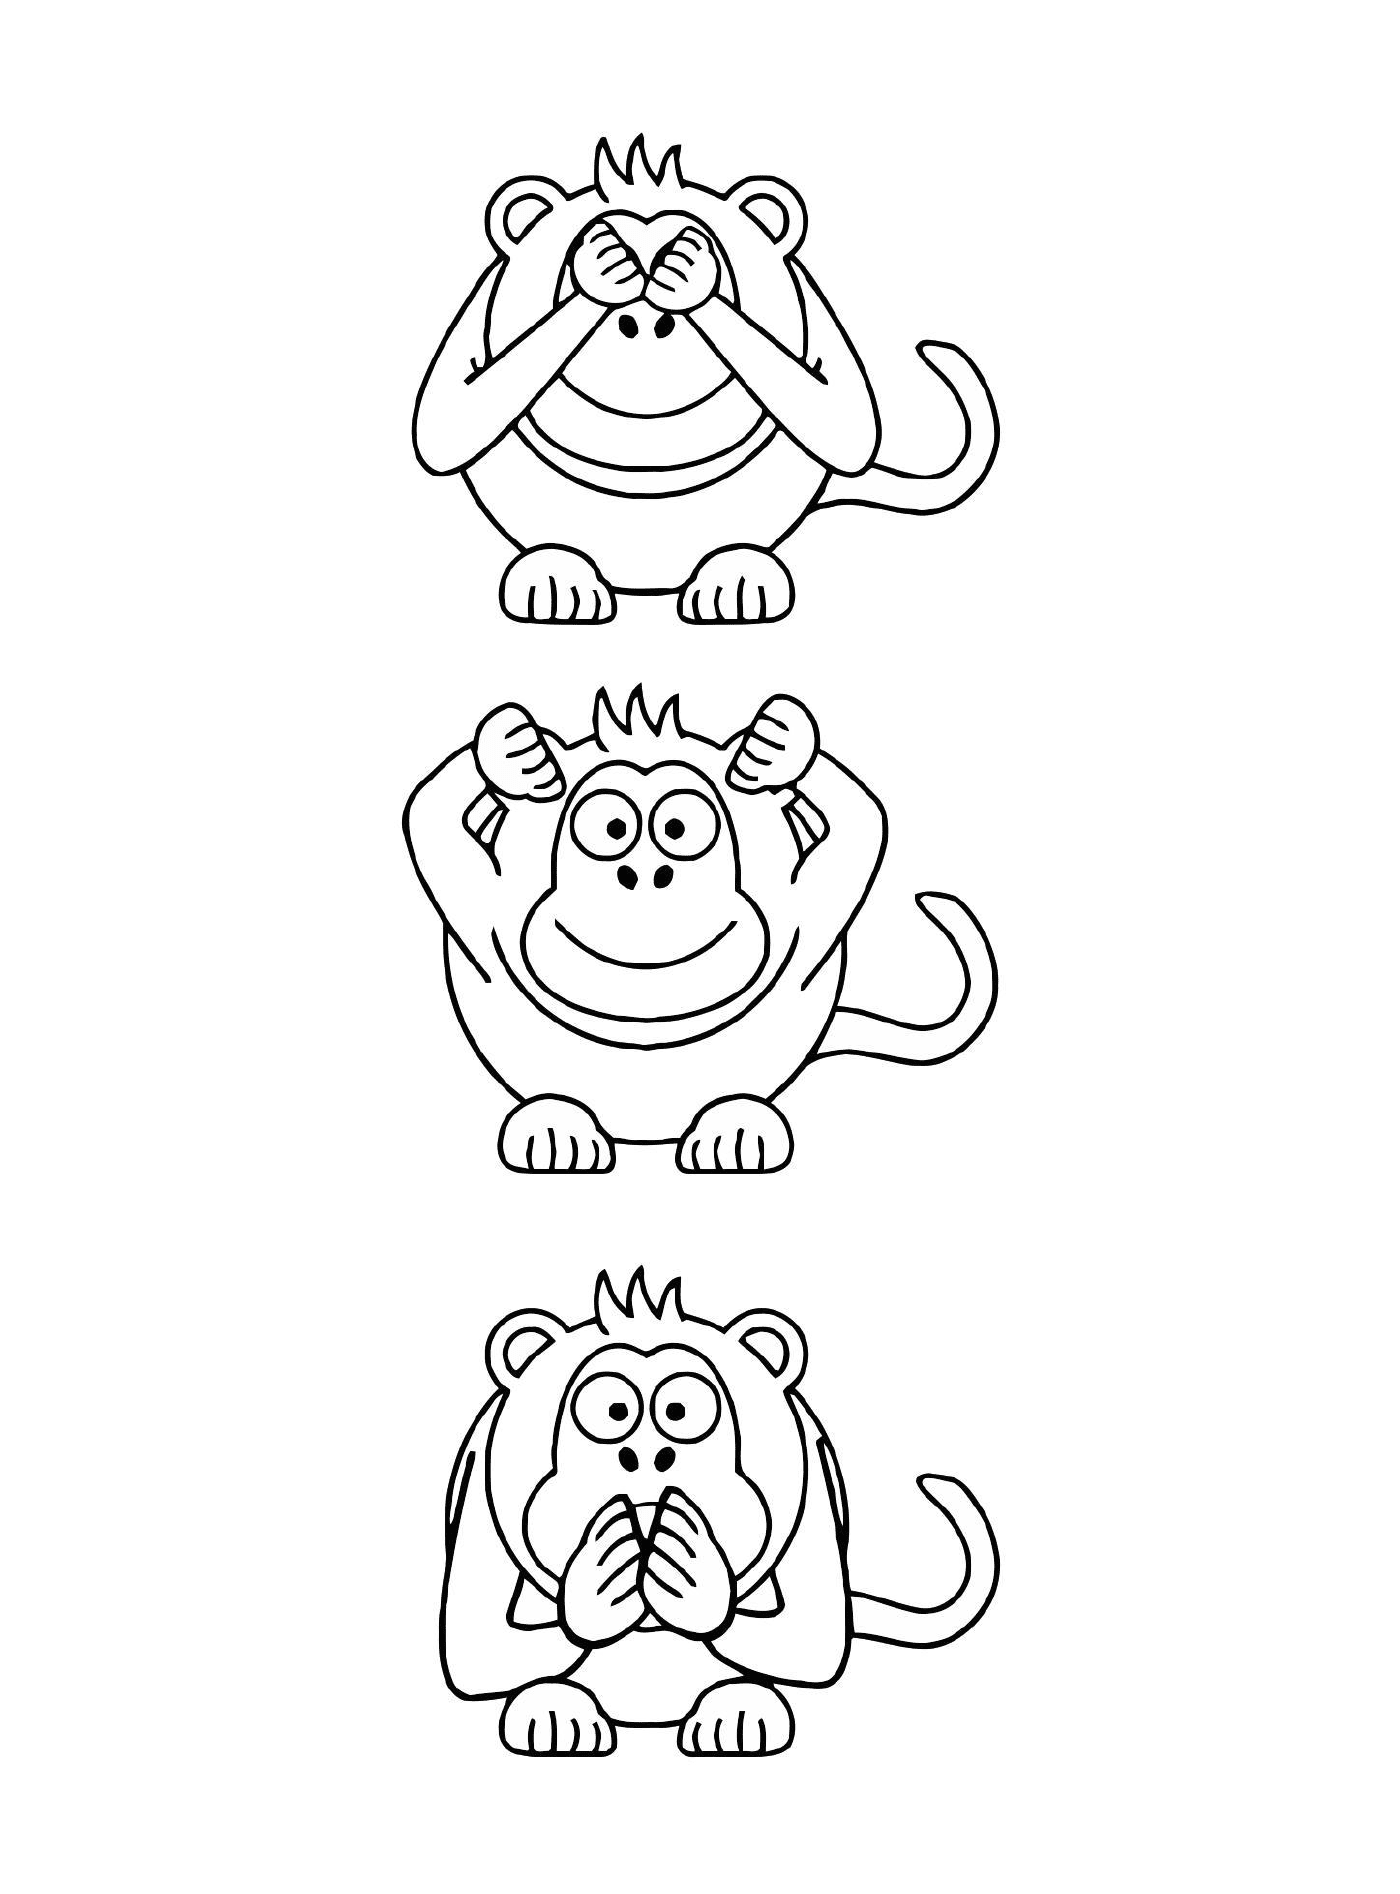  三只有不同表达式的猴子 